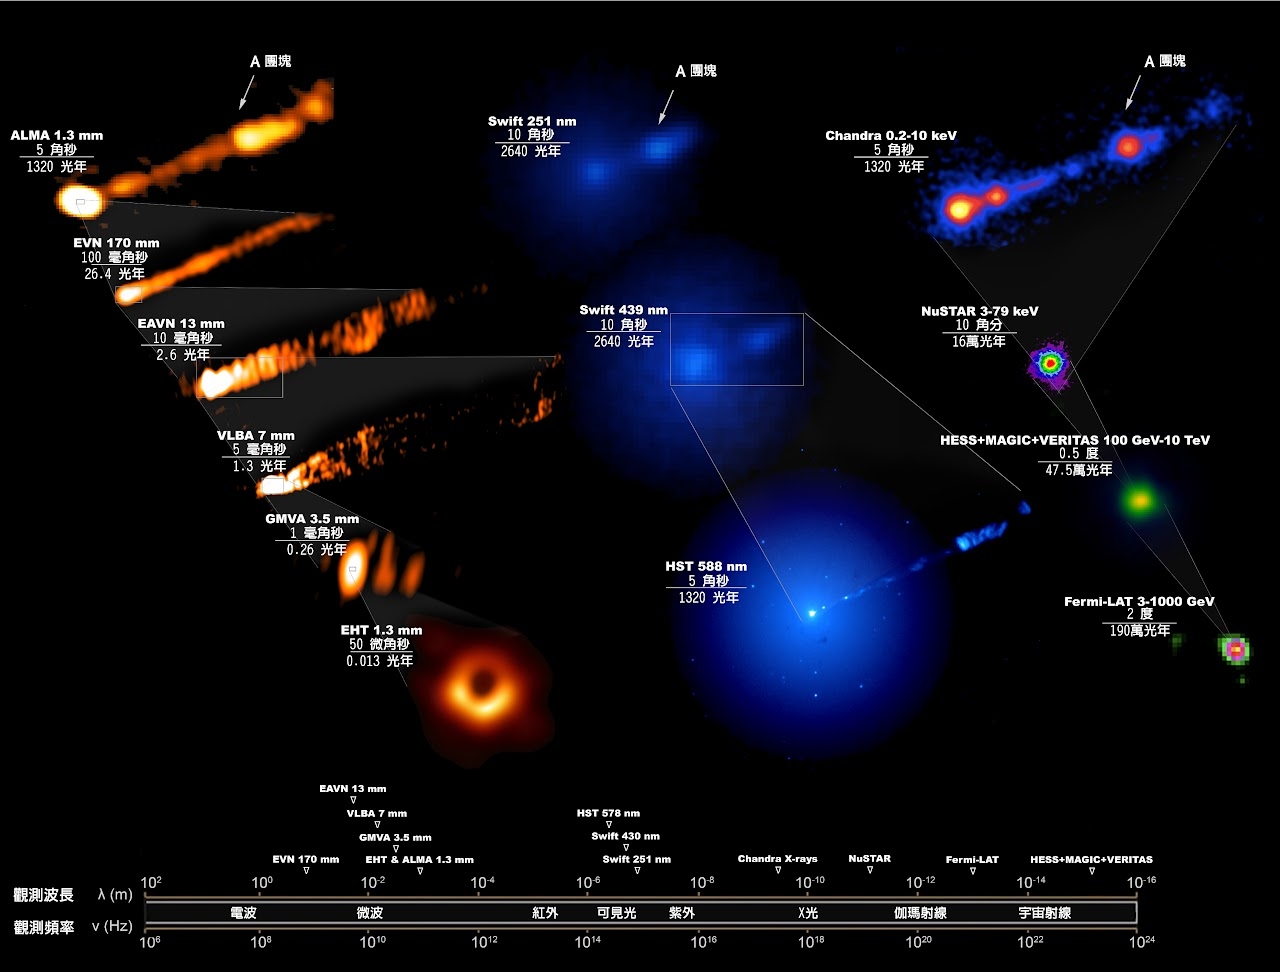 图片为 M87 黑洞的多波段影像。 EHT 拍到黑洞事件视界附近的「甜甜圈」影像，而其他波段的望远镜则拍到黑洞附近狭长而笔直的喷流。资料来源│中研院天文所